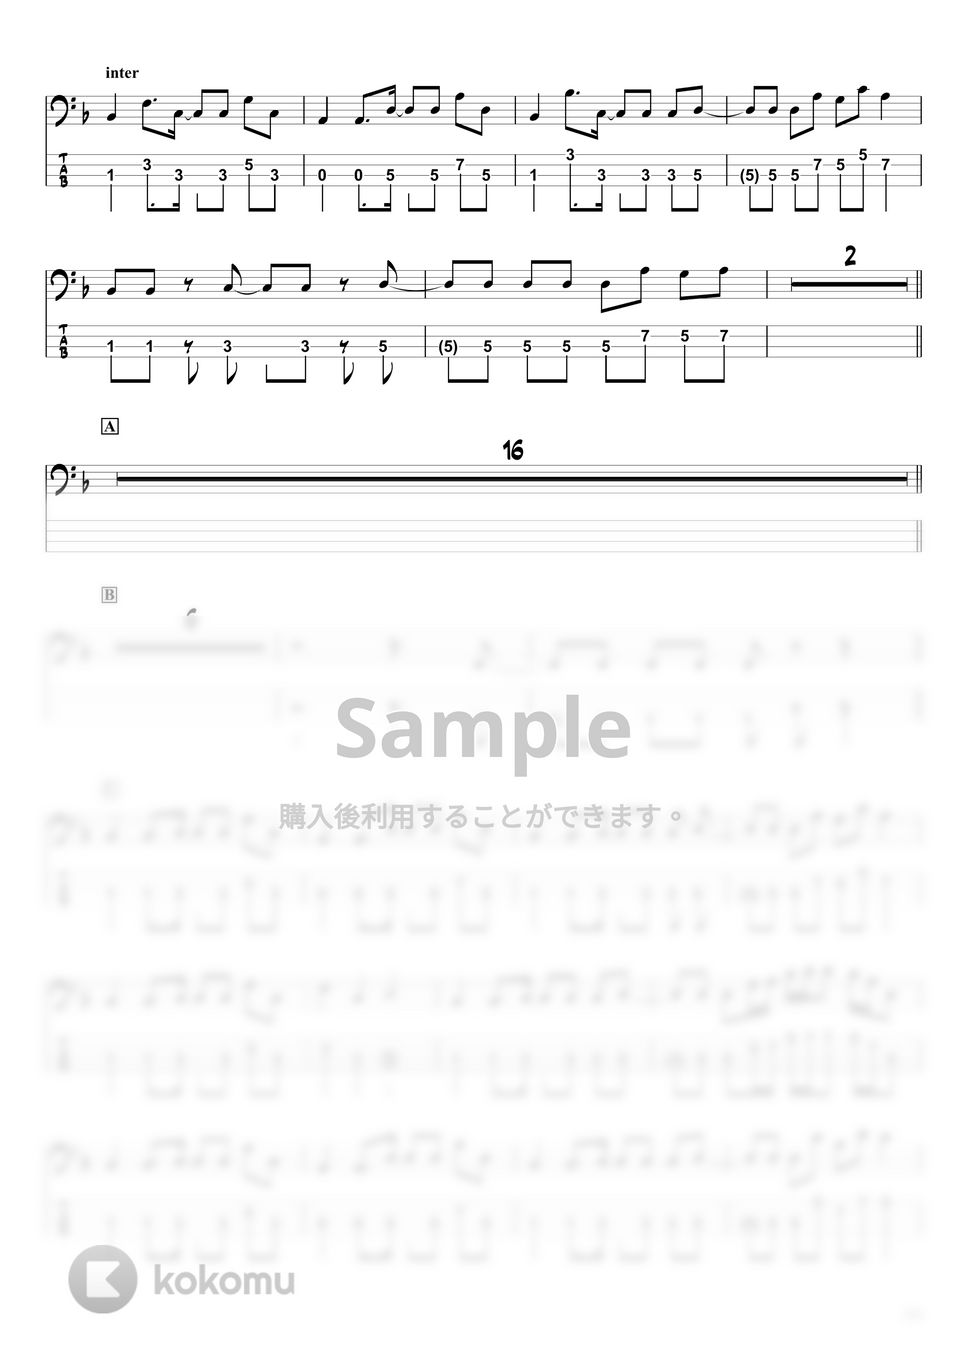 ヨルシカ - 春泥棒 (ベースTAB譜/☆4弦ベース対応) by swbass